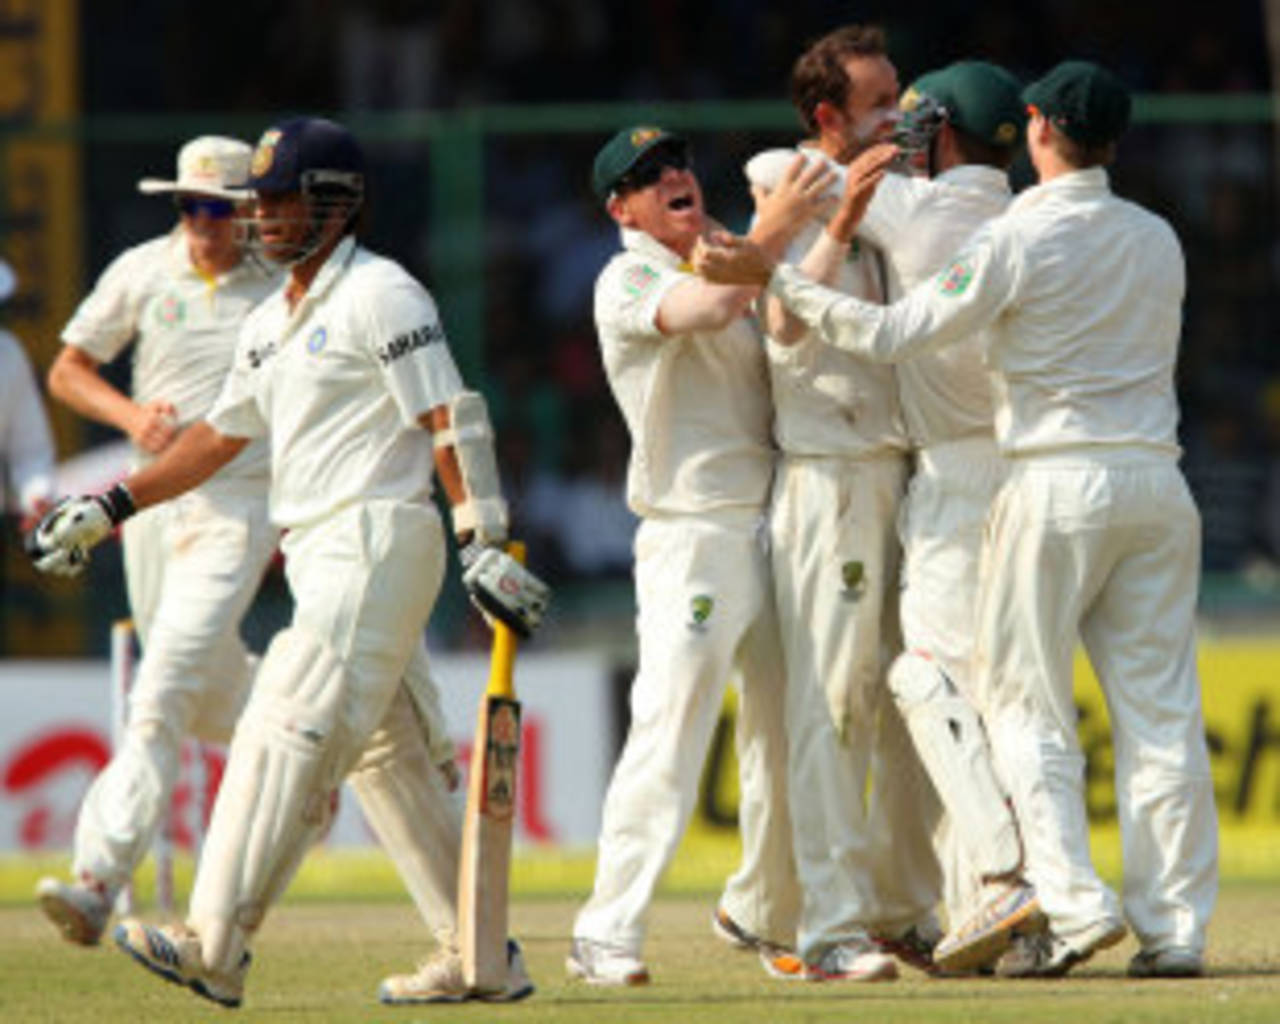 Nathan Lyon picks up Sachin Tendulkar's wicket, India v Australia, 4th Test, Delhi, 2nd day, March 23, 2013